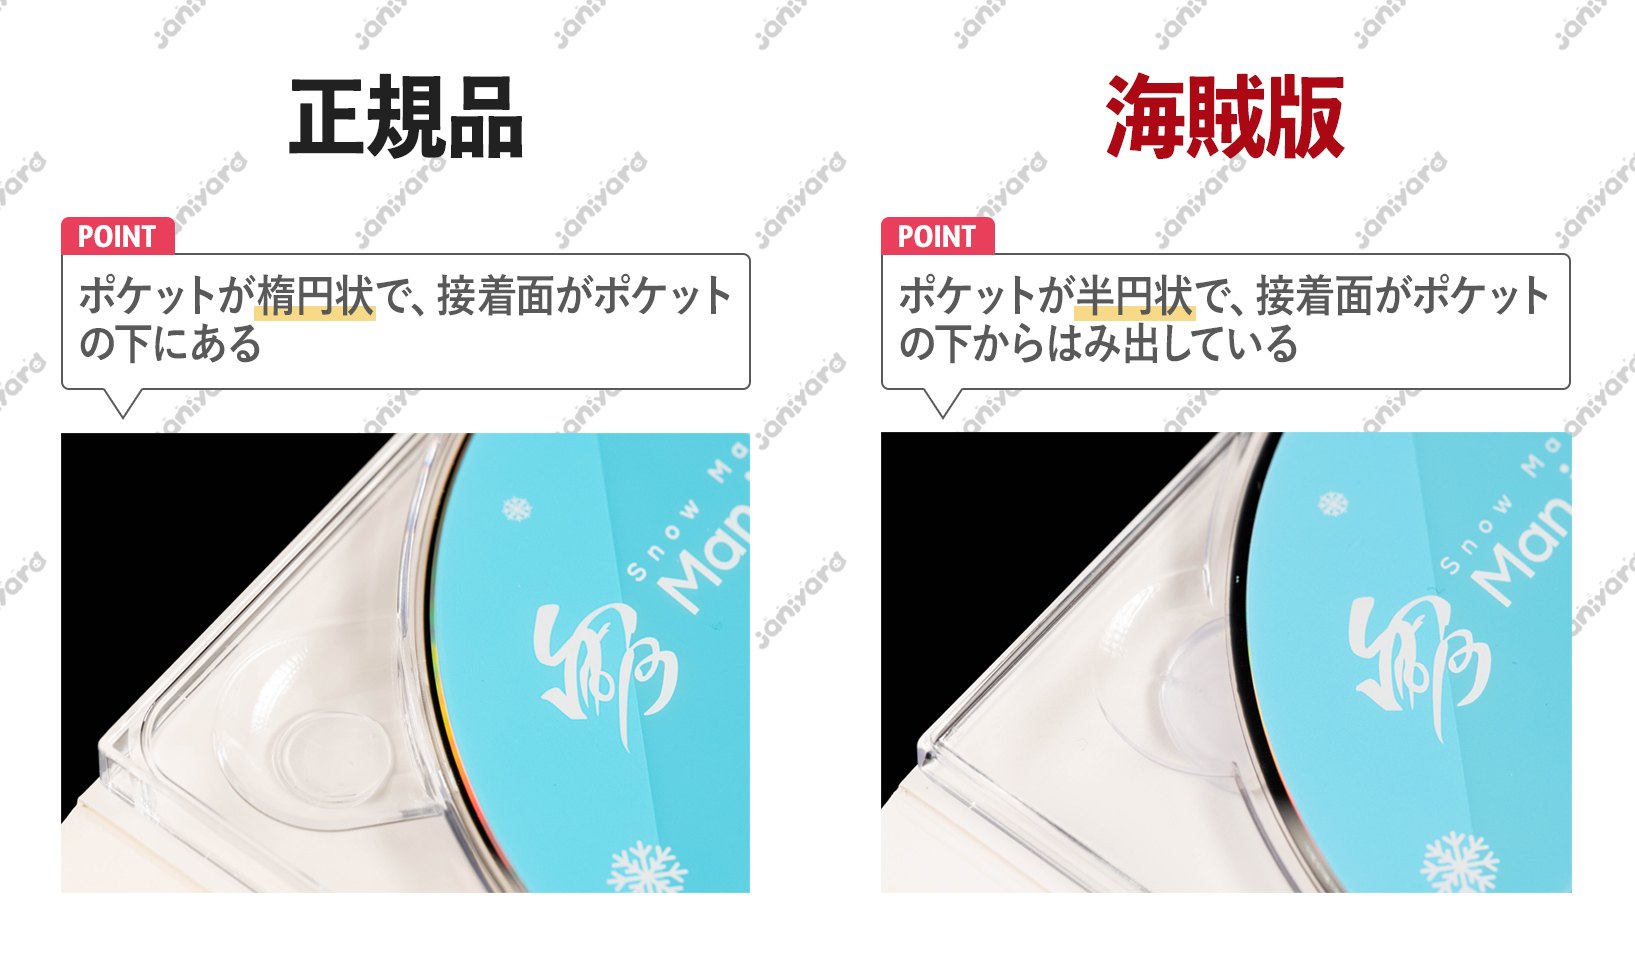 素顔4 snowman ミュージック DVD/ブルーレイ 本・音楽・ゲーム 限定配送